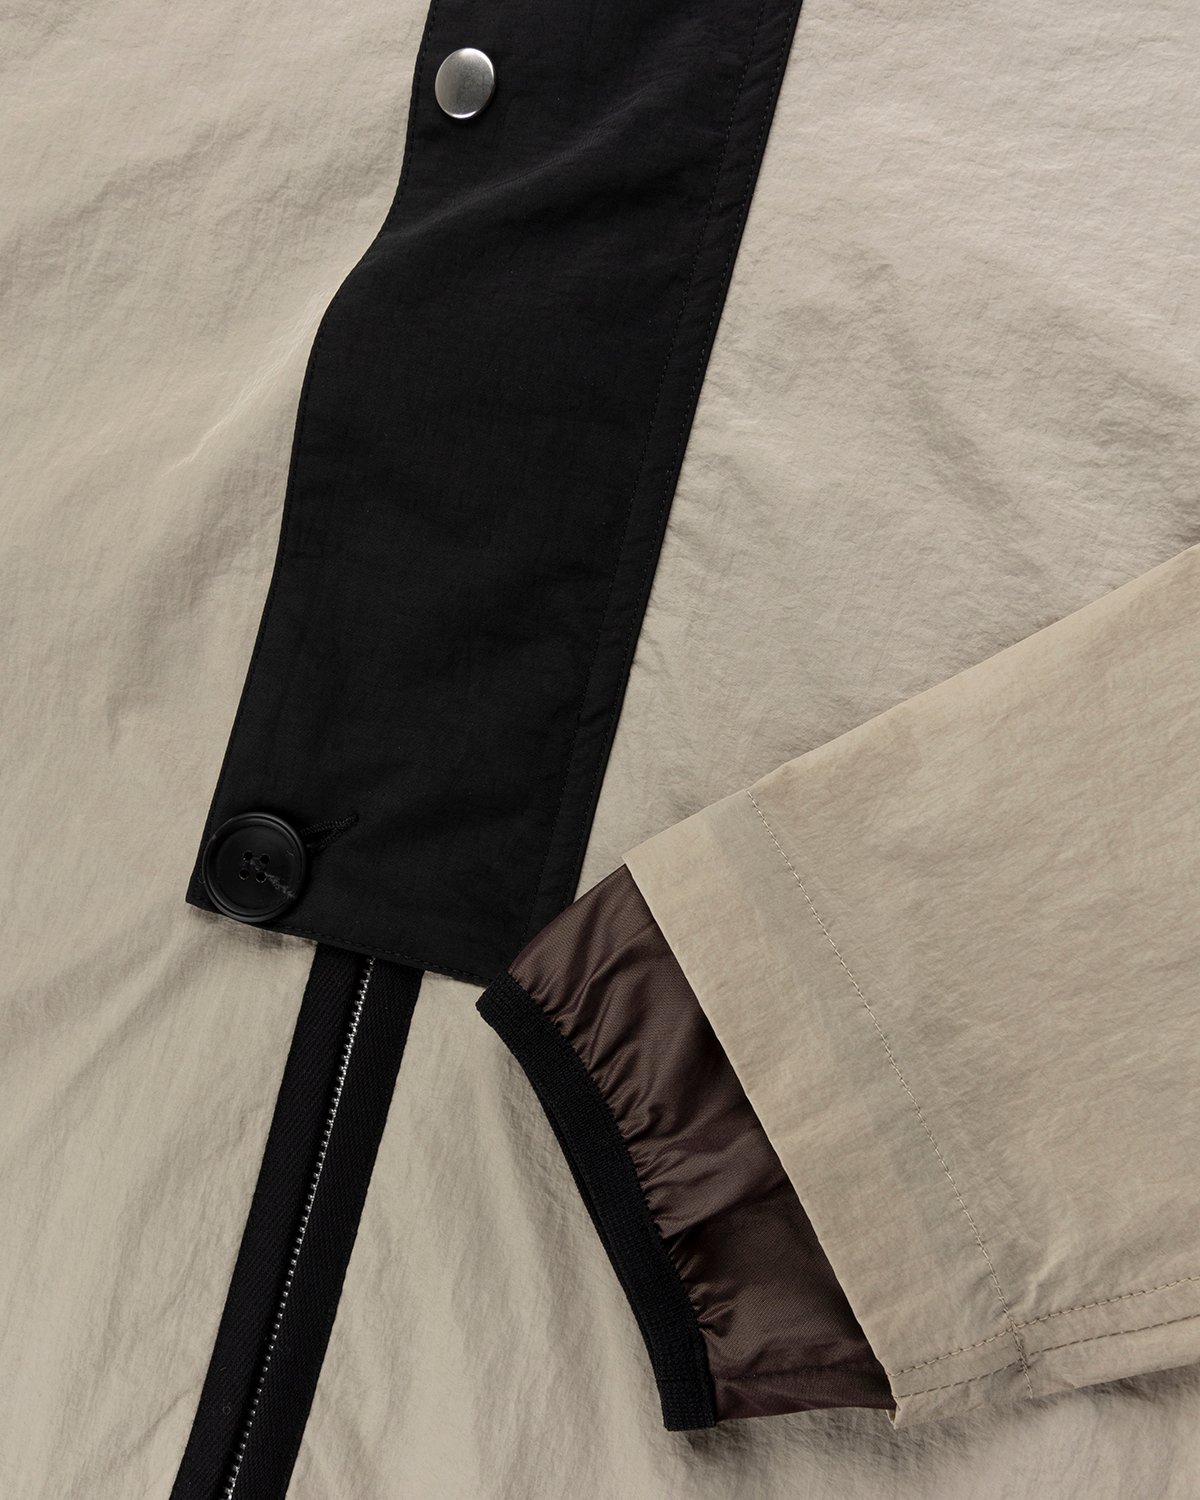 Arnar Mar Jonsson - Composition V-Neck Hooded Tracktop Beige Chocolate Black - Clothing - Black - Image 3